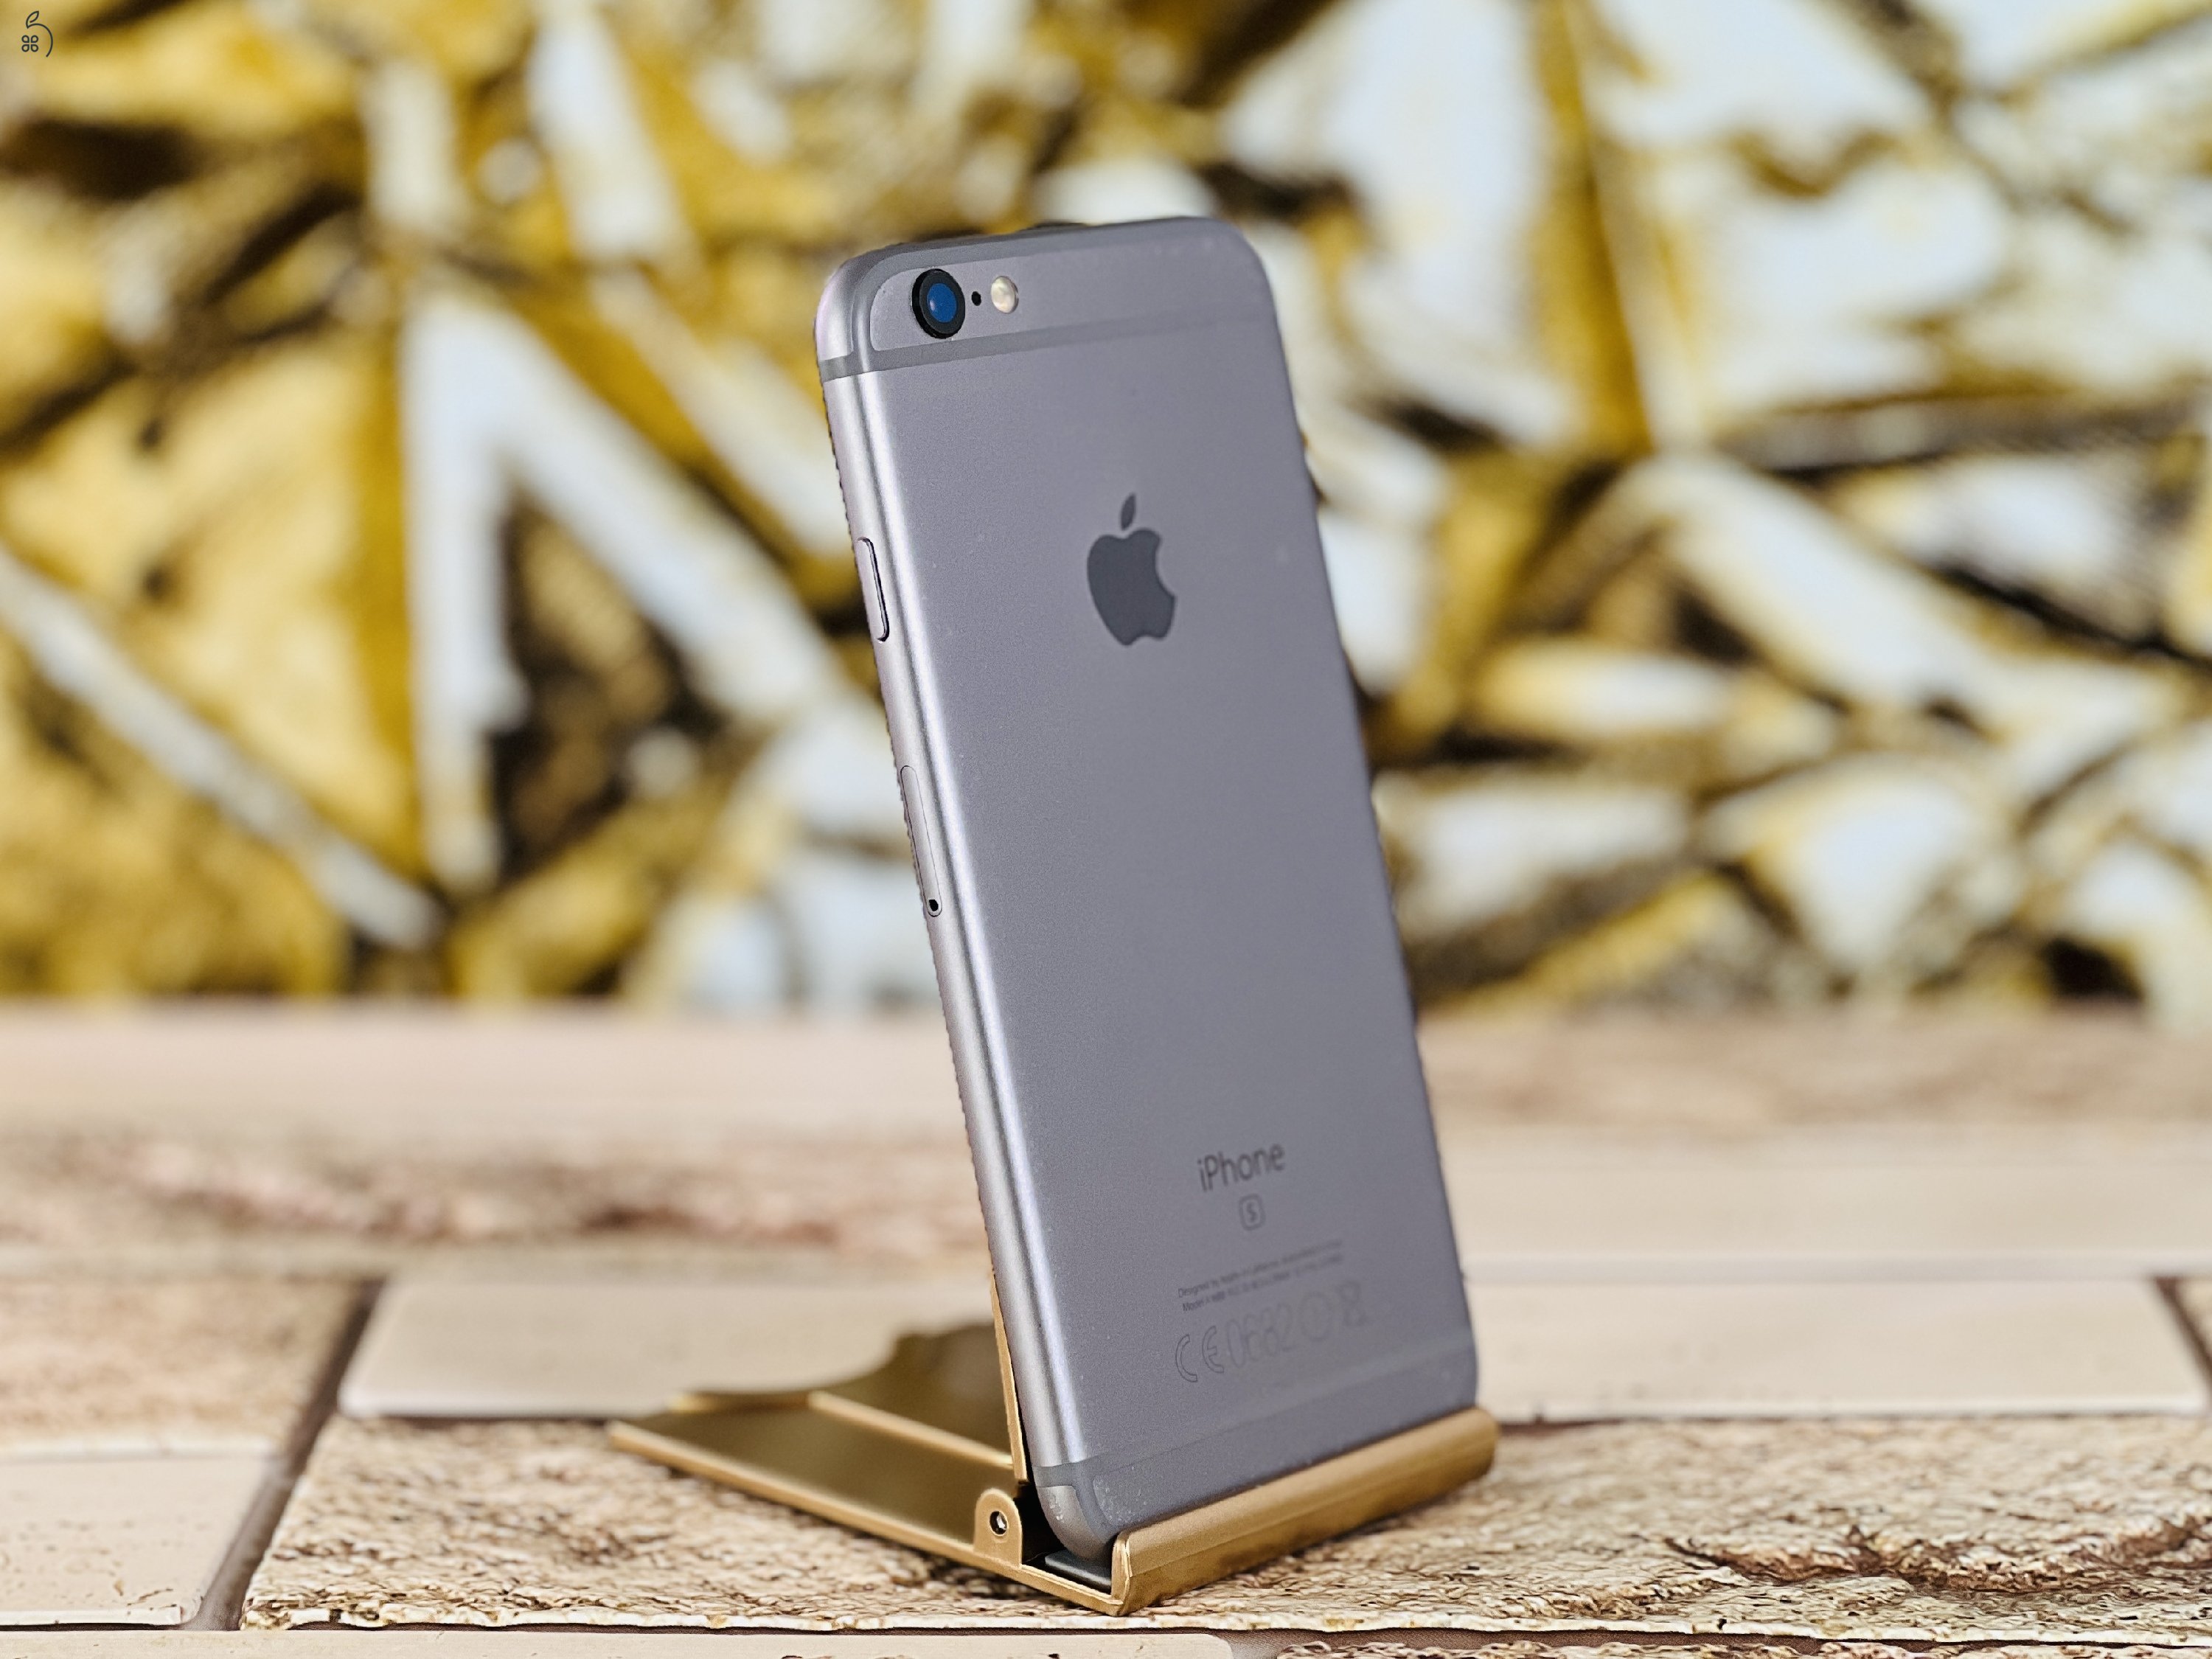 Eladó iPhone 6s 32 GB Space Gray 100% aksi szép állapotú - 12 HÓ GARANCIA - L4730